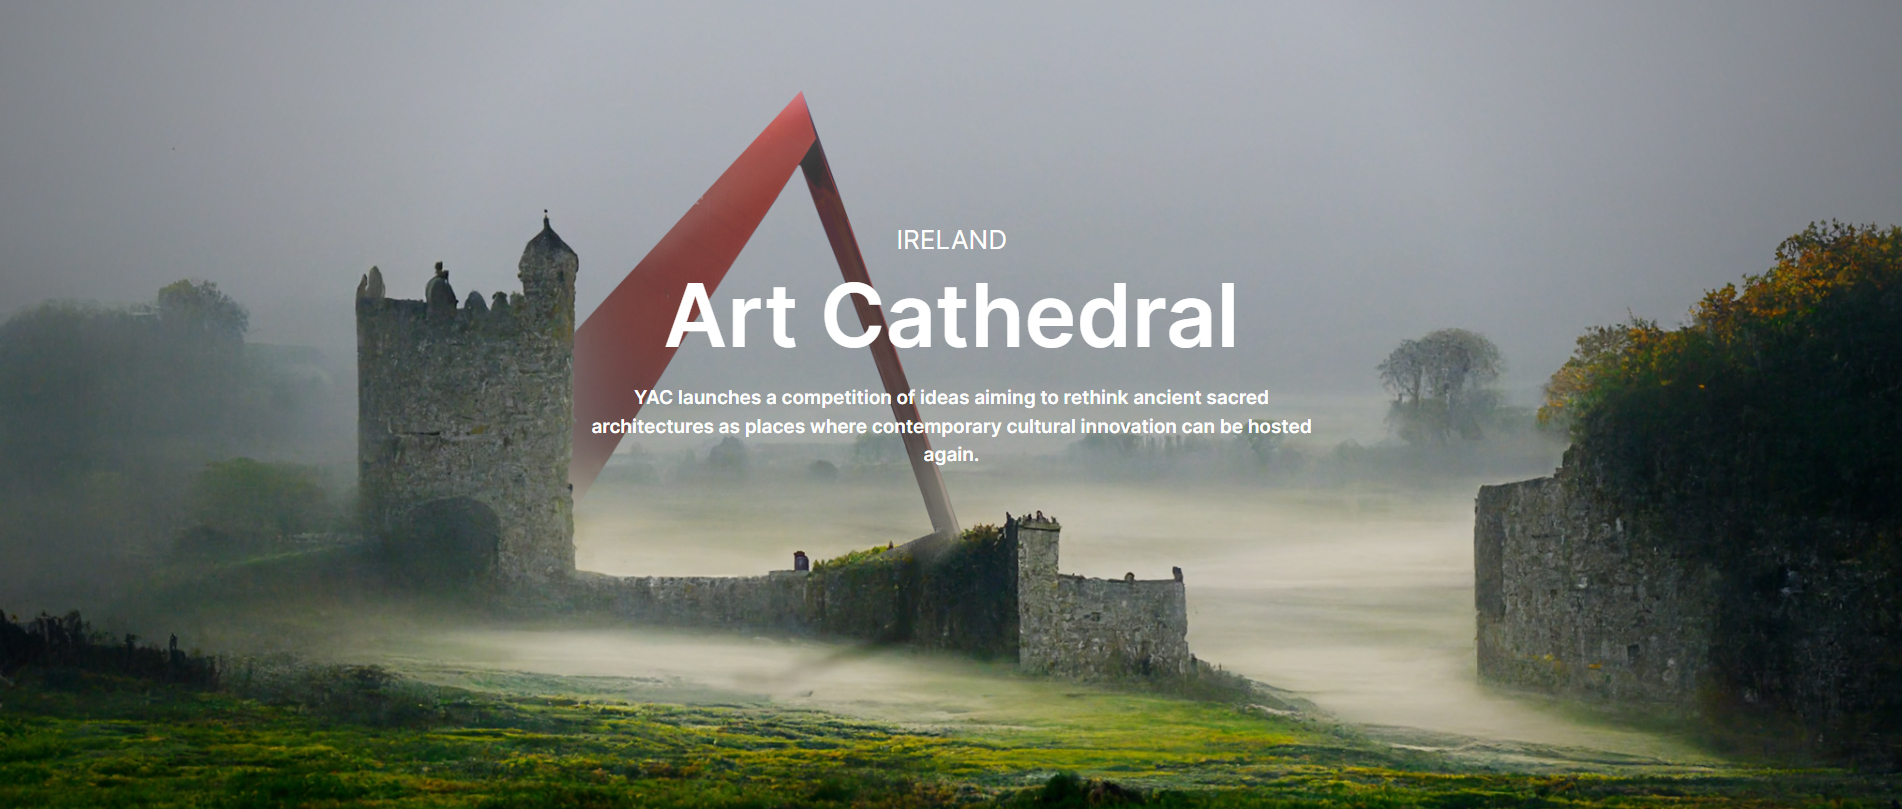 爱尔兰艺术大教堂设计竞赛